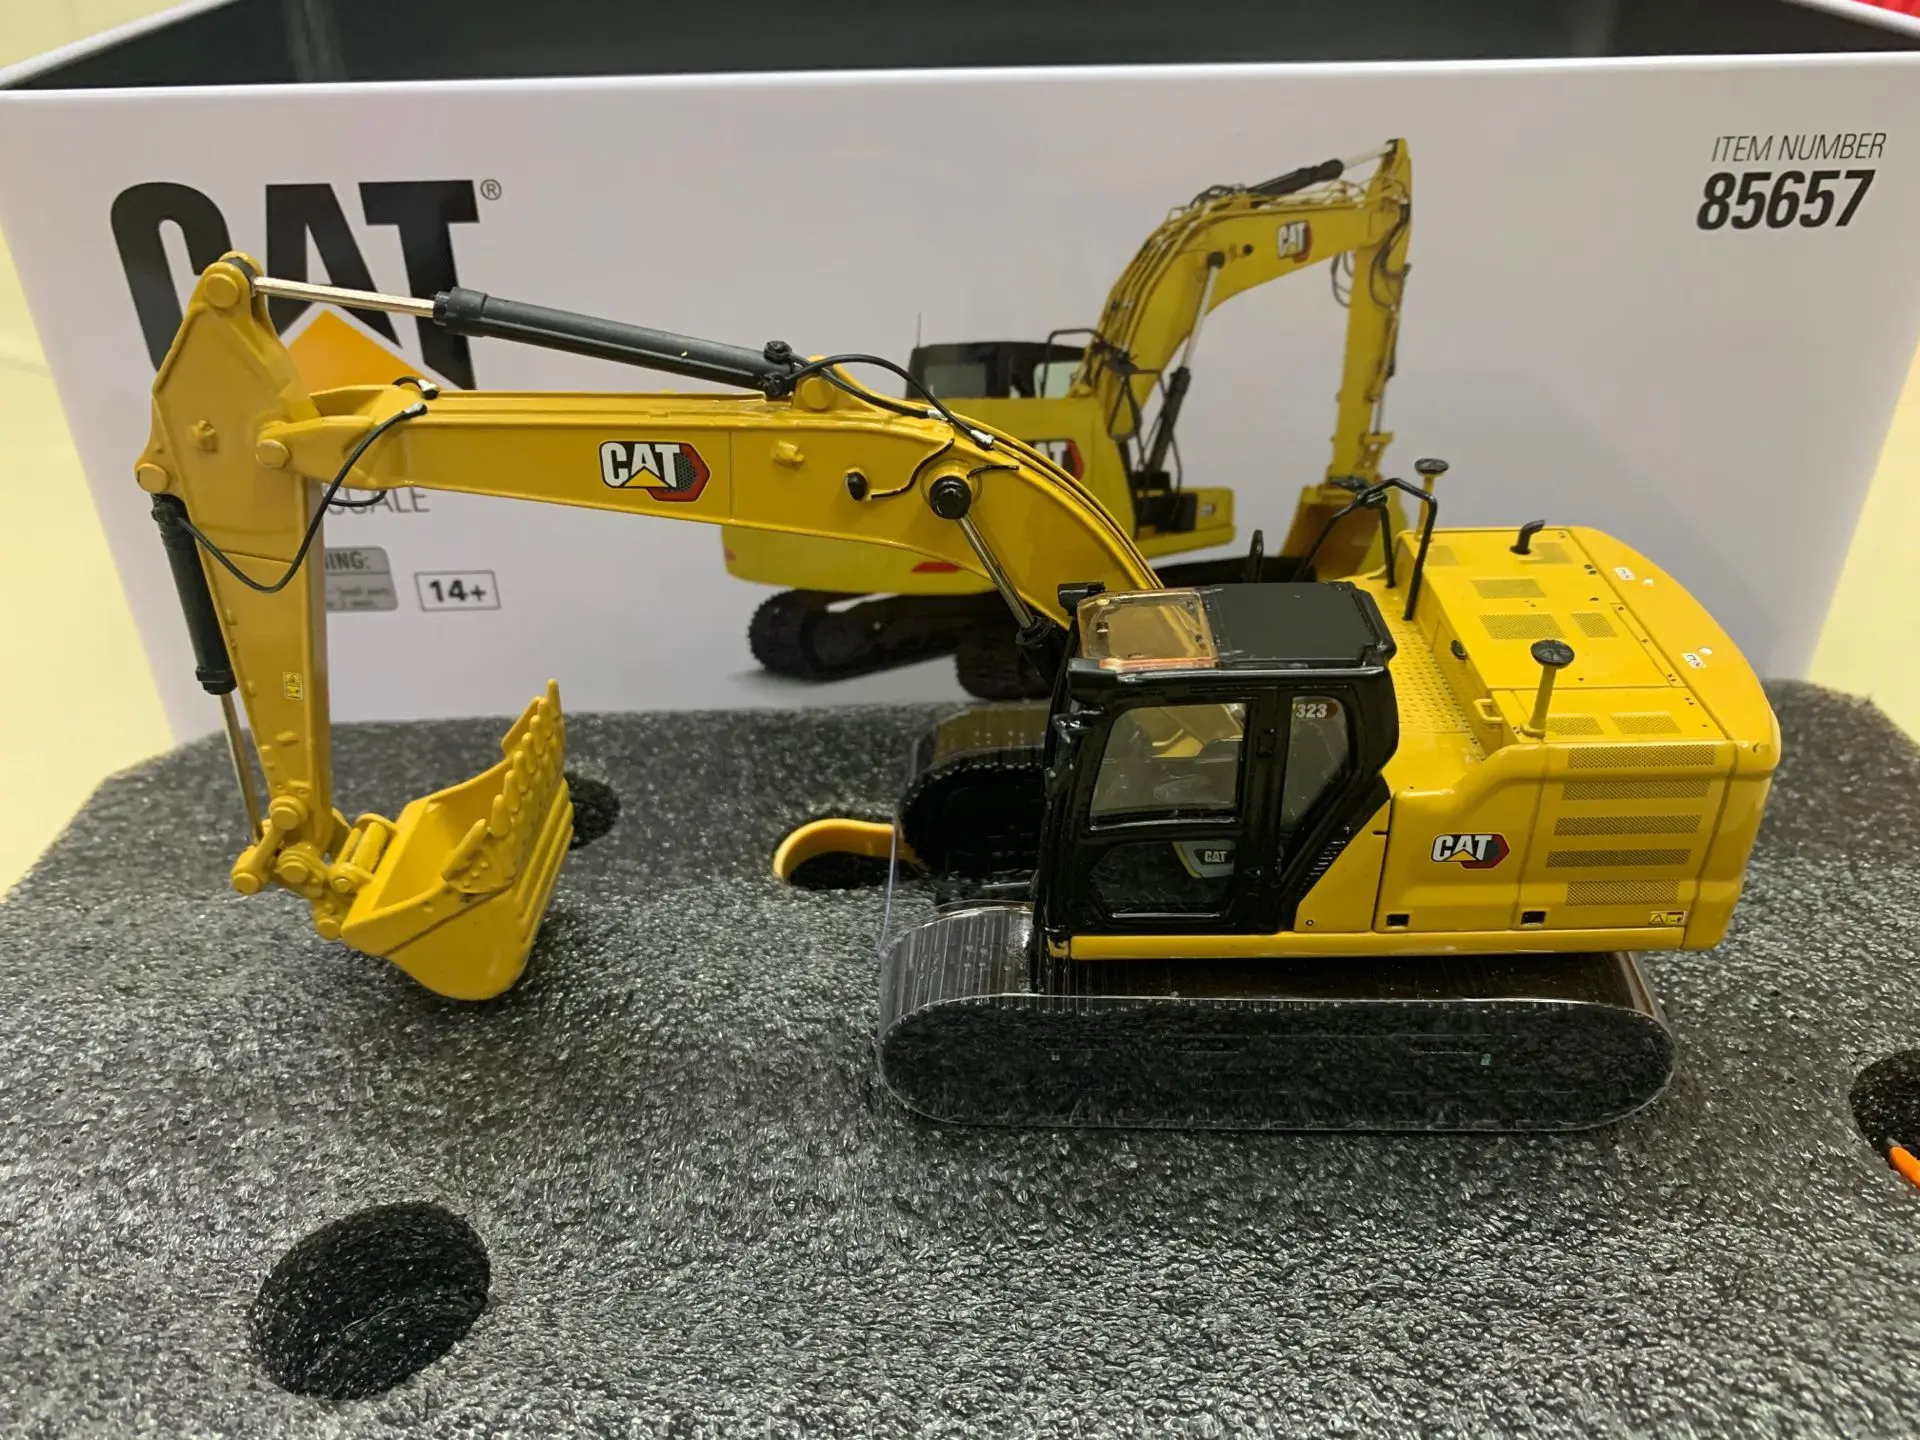 

Гидравлический экскаватор Caterpillar CAT 323, конструкция следующего поколения с рабочими инструментами, масштаб 1/50, металлическая модель, игрушк...